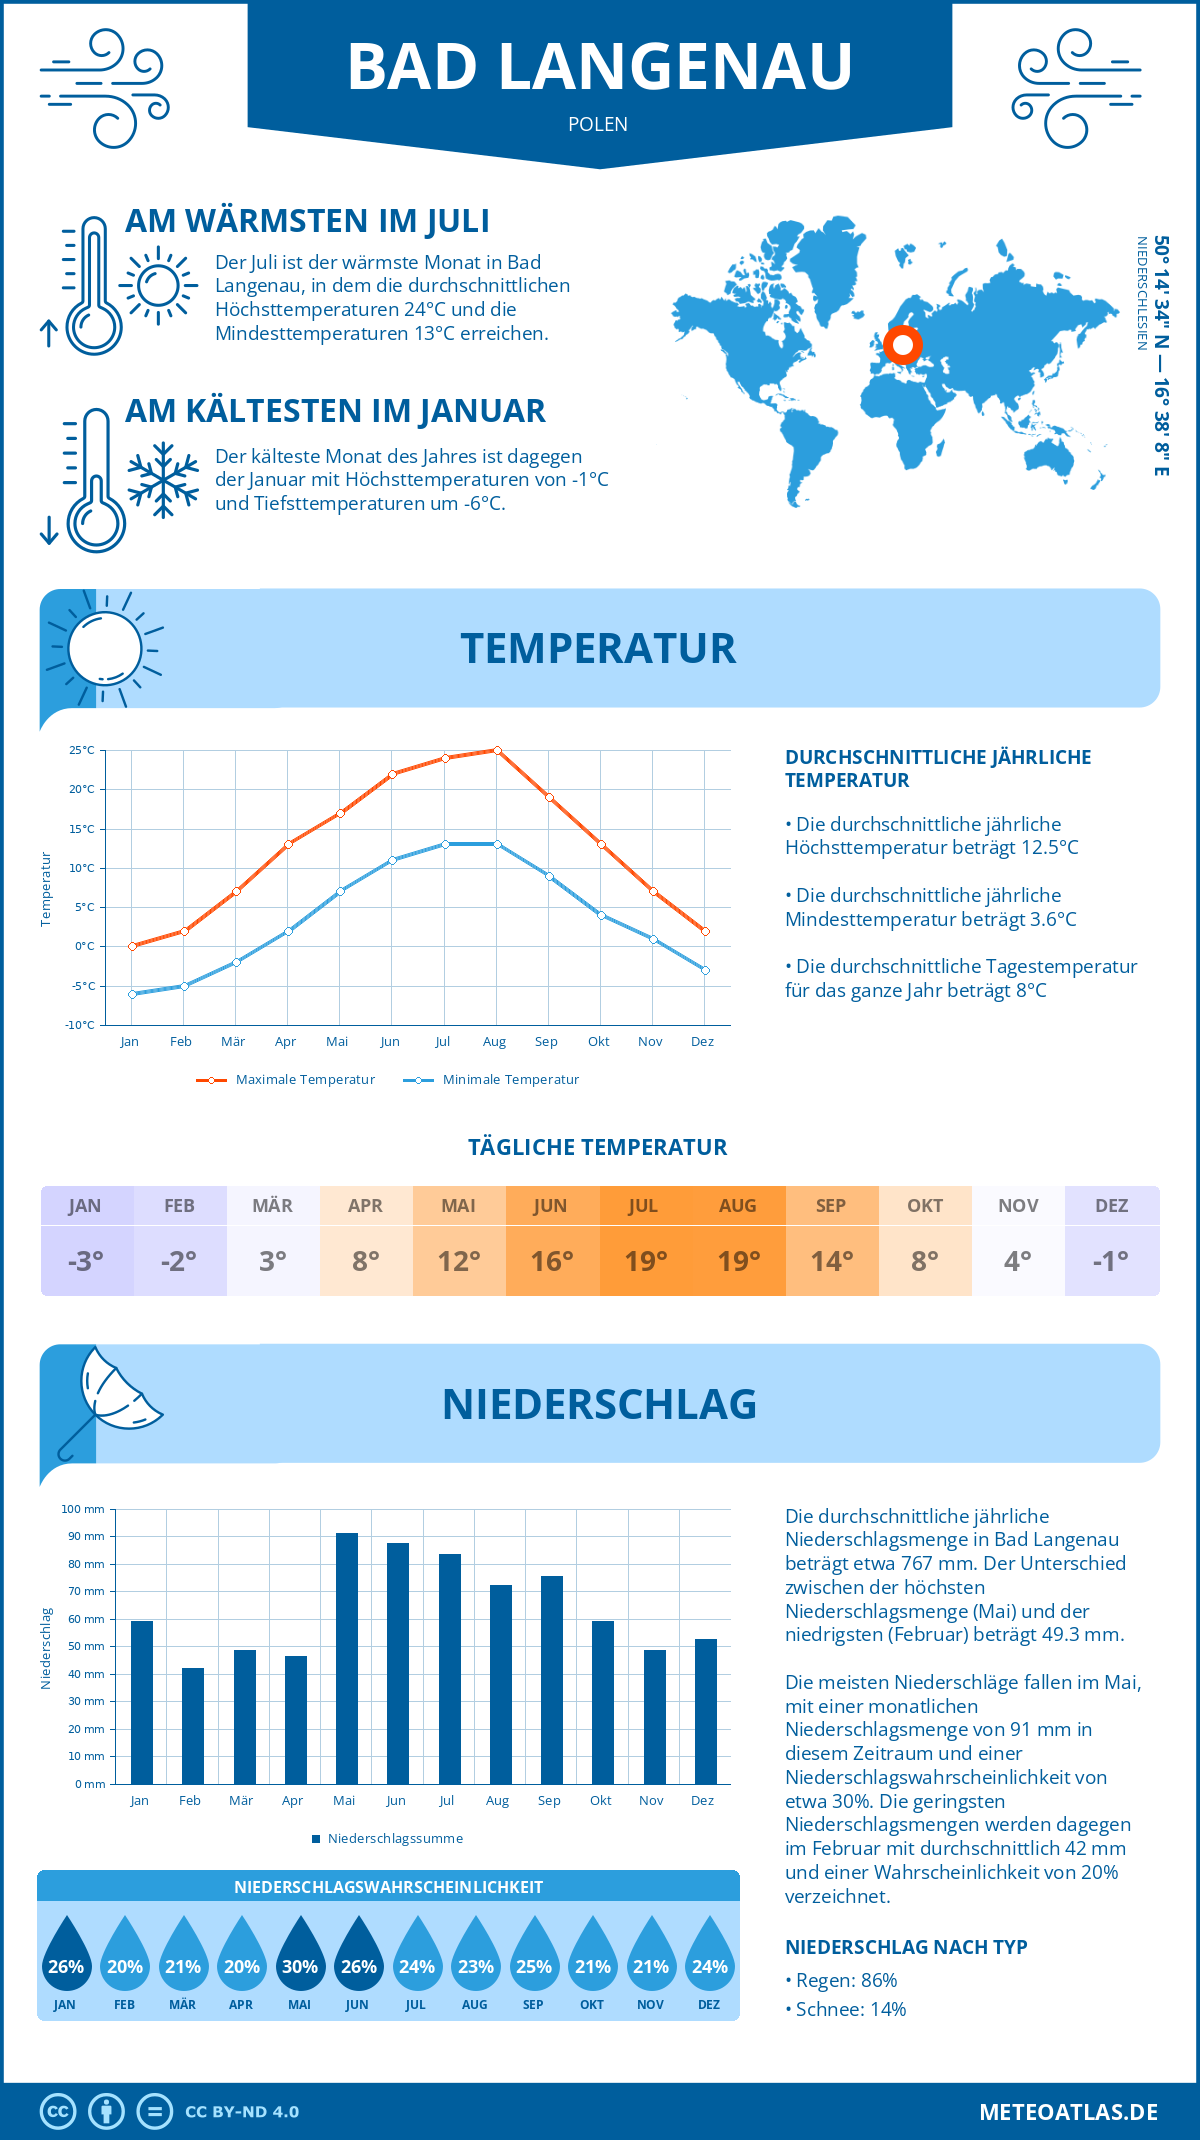 Wetter Bad Langenau (Polen) - Temperatur und Niederschlag